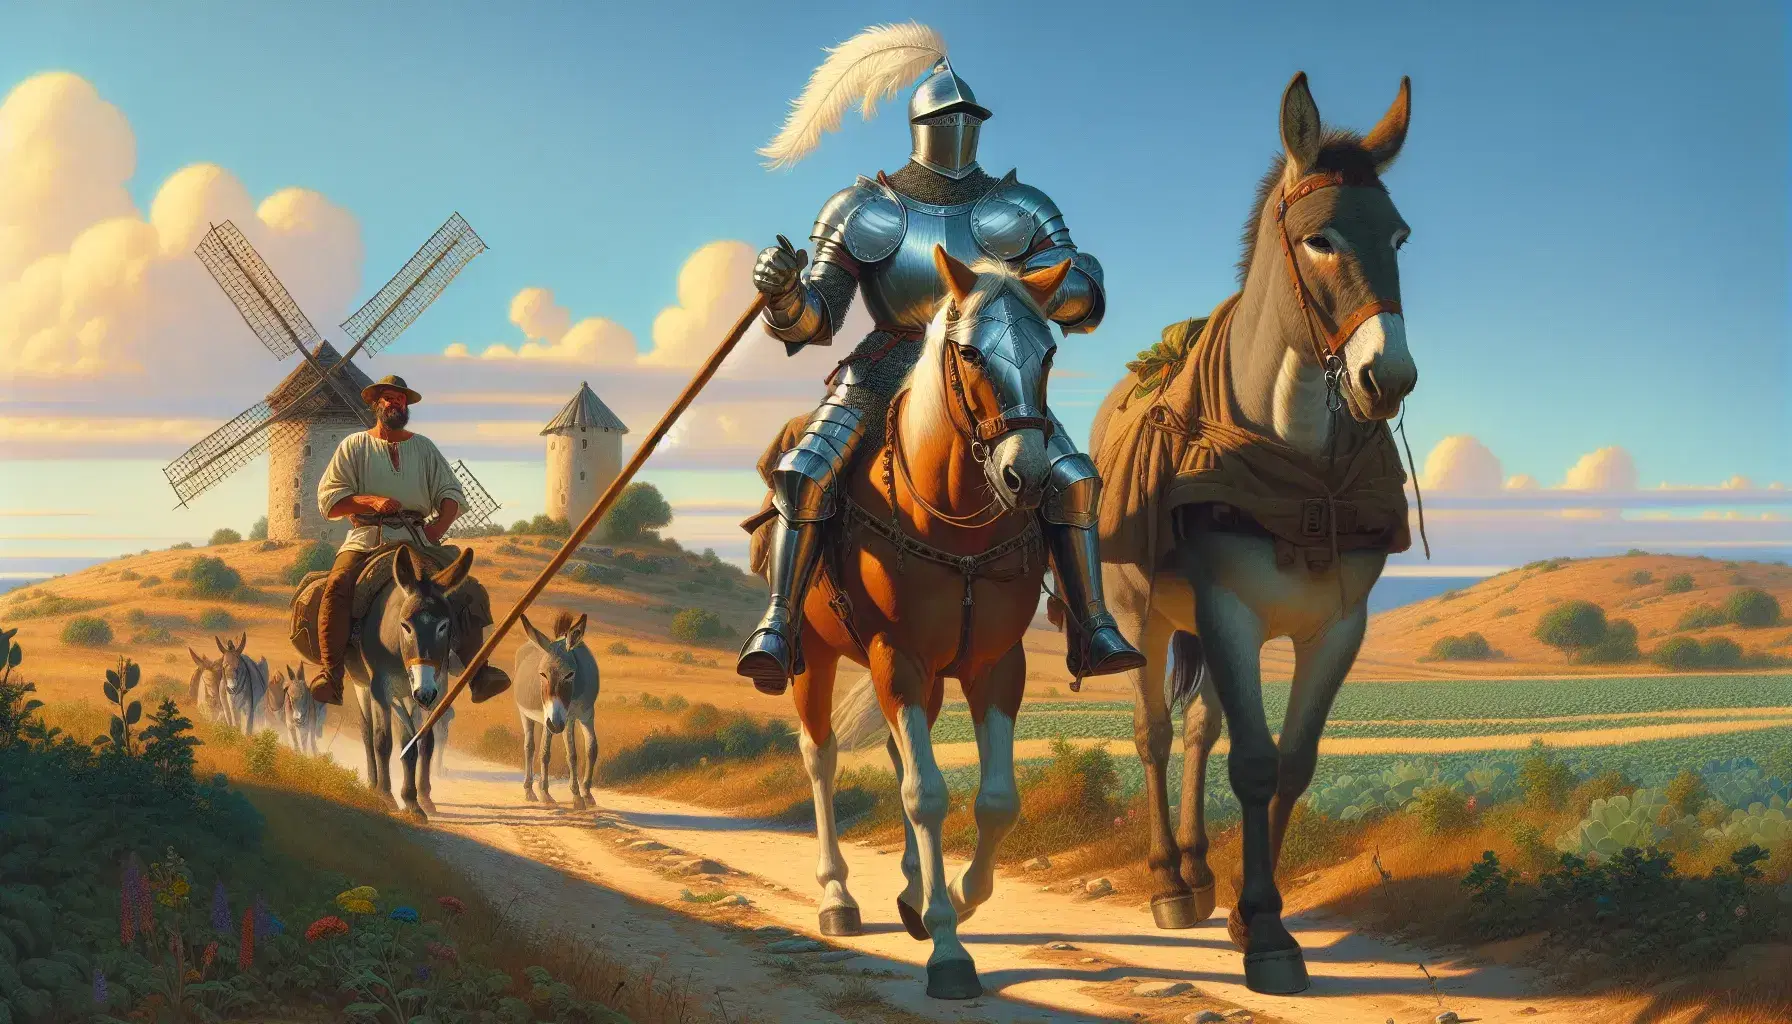 Caballero en armadura de metal con lanza montando caballo marrón claro y acompañante en burro gris recorren camino rural con molino al fondo.